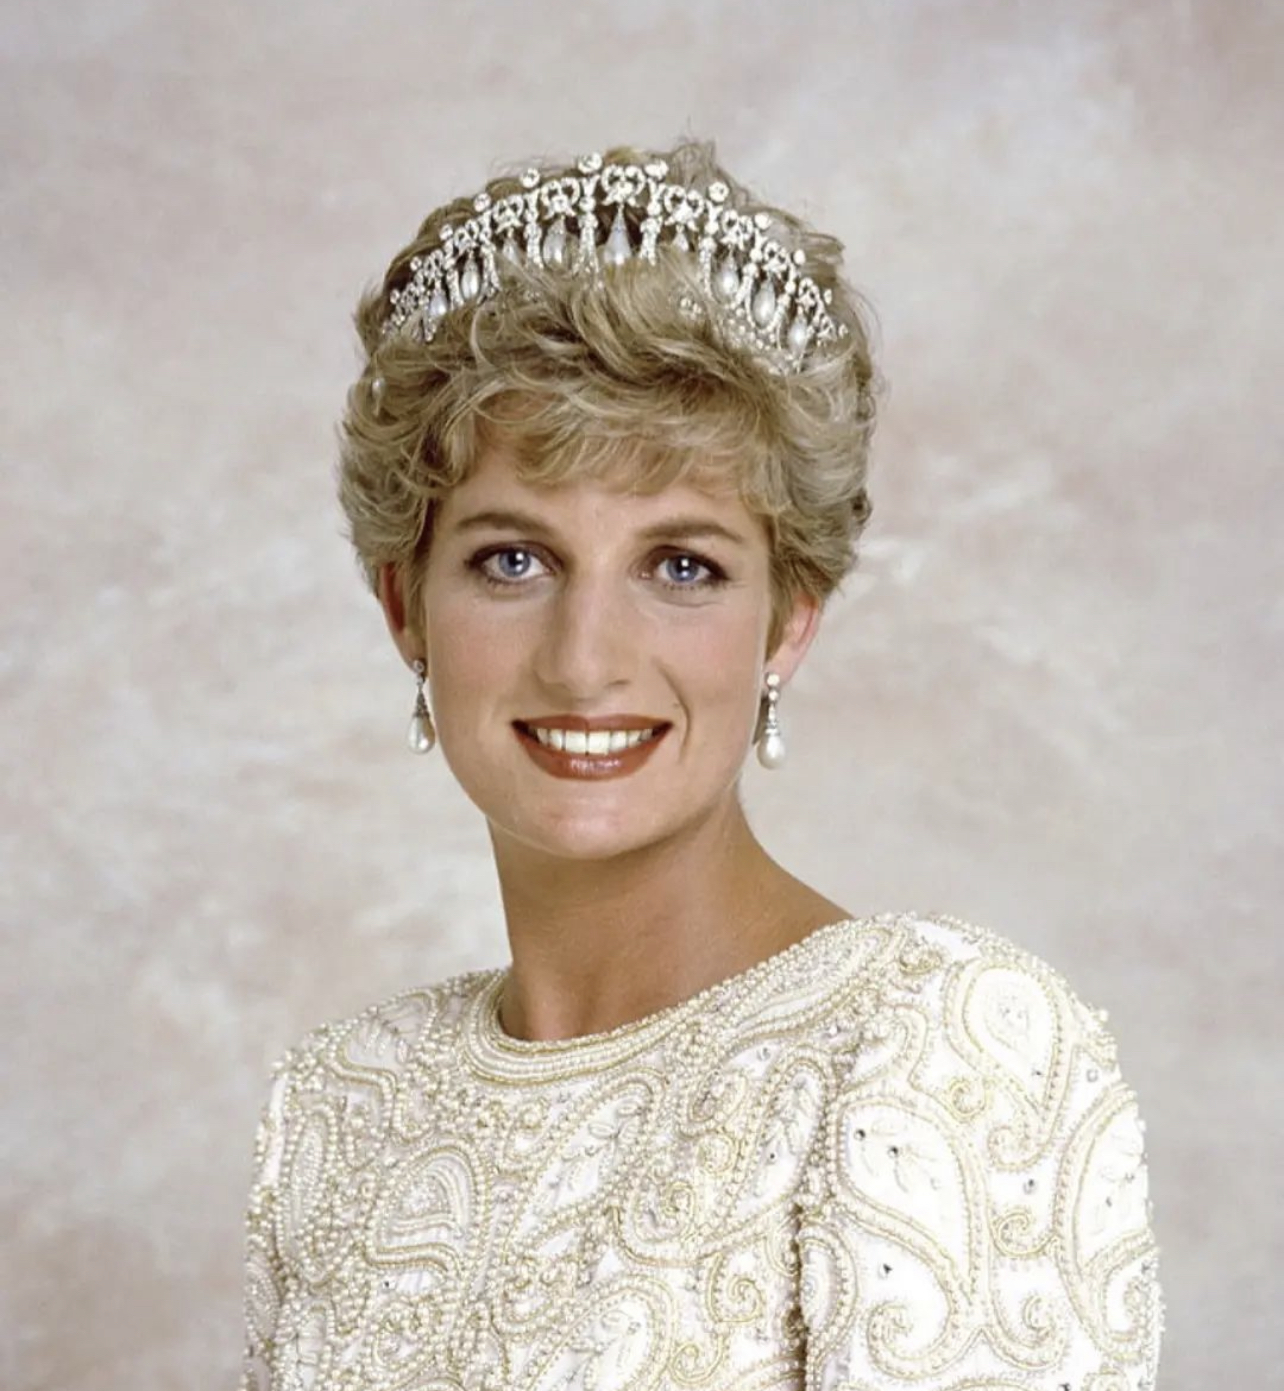 Πως η Diana έγινε influencer 25 χρόνια μετά τον θάνατό της